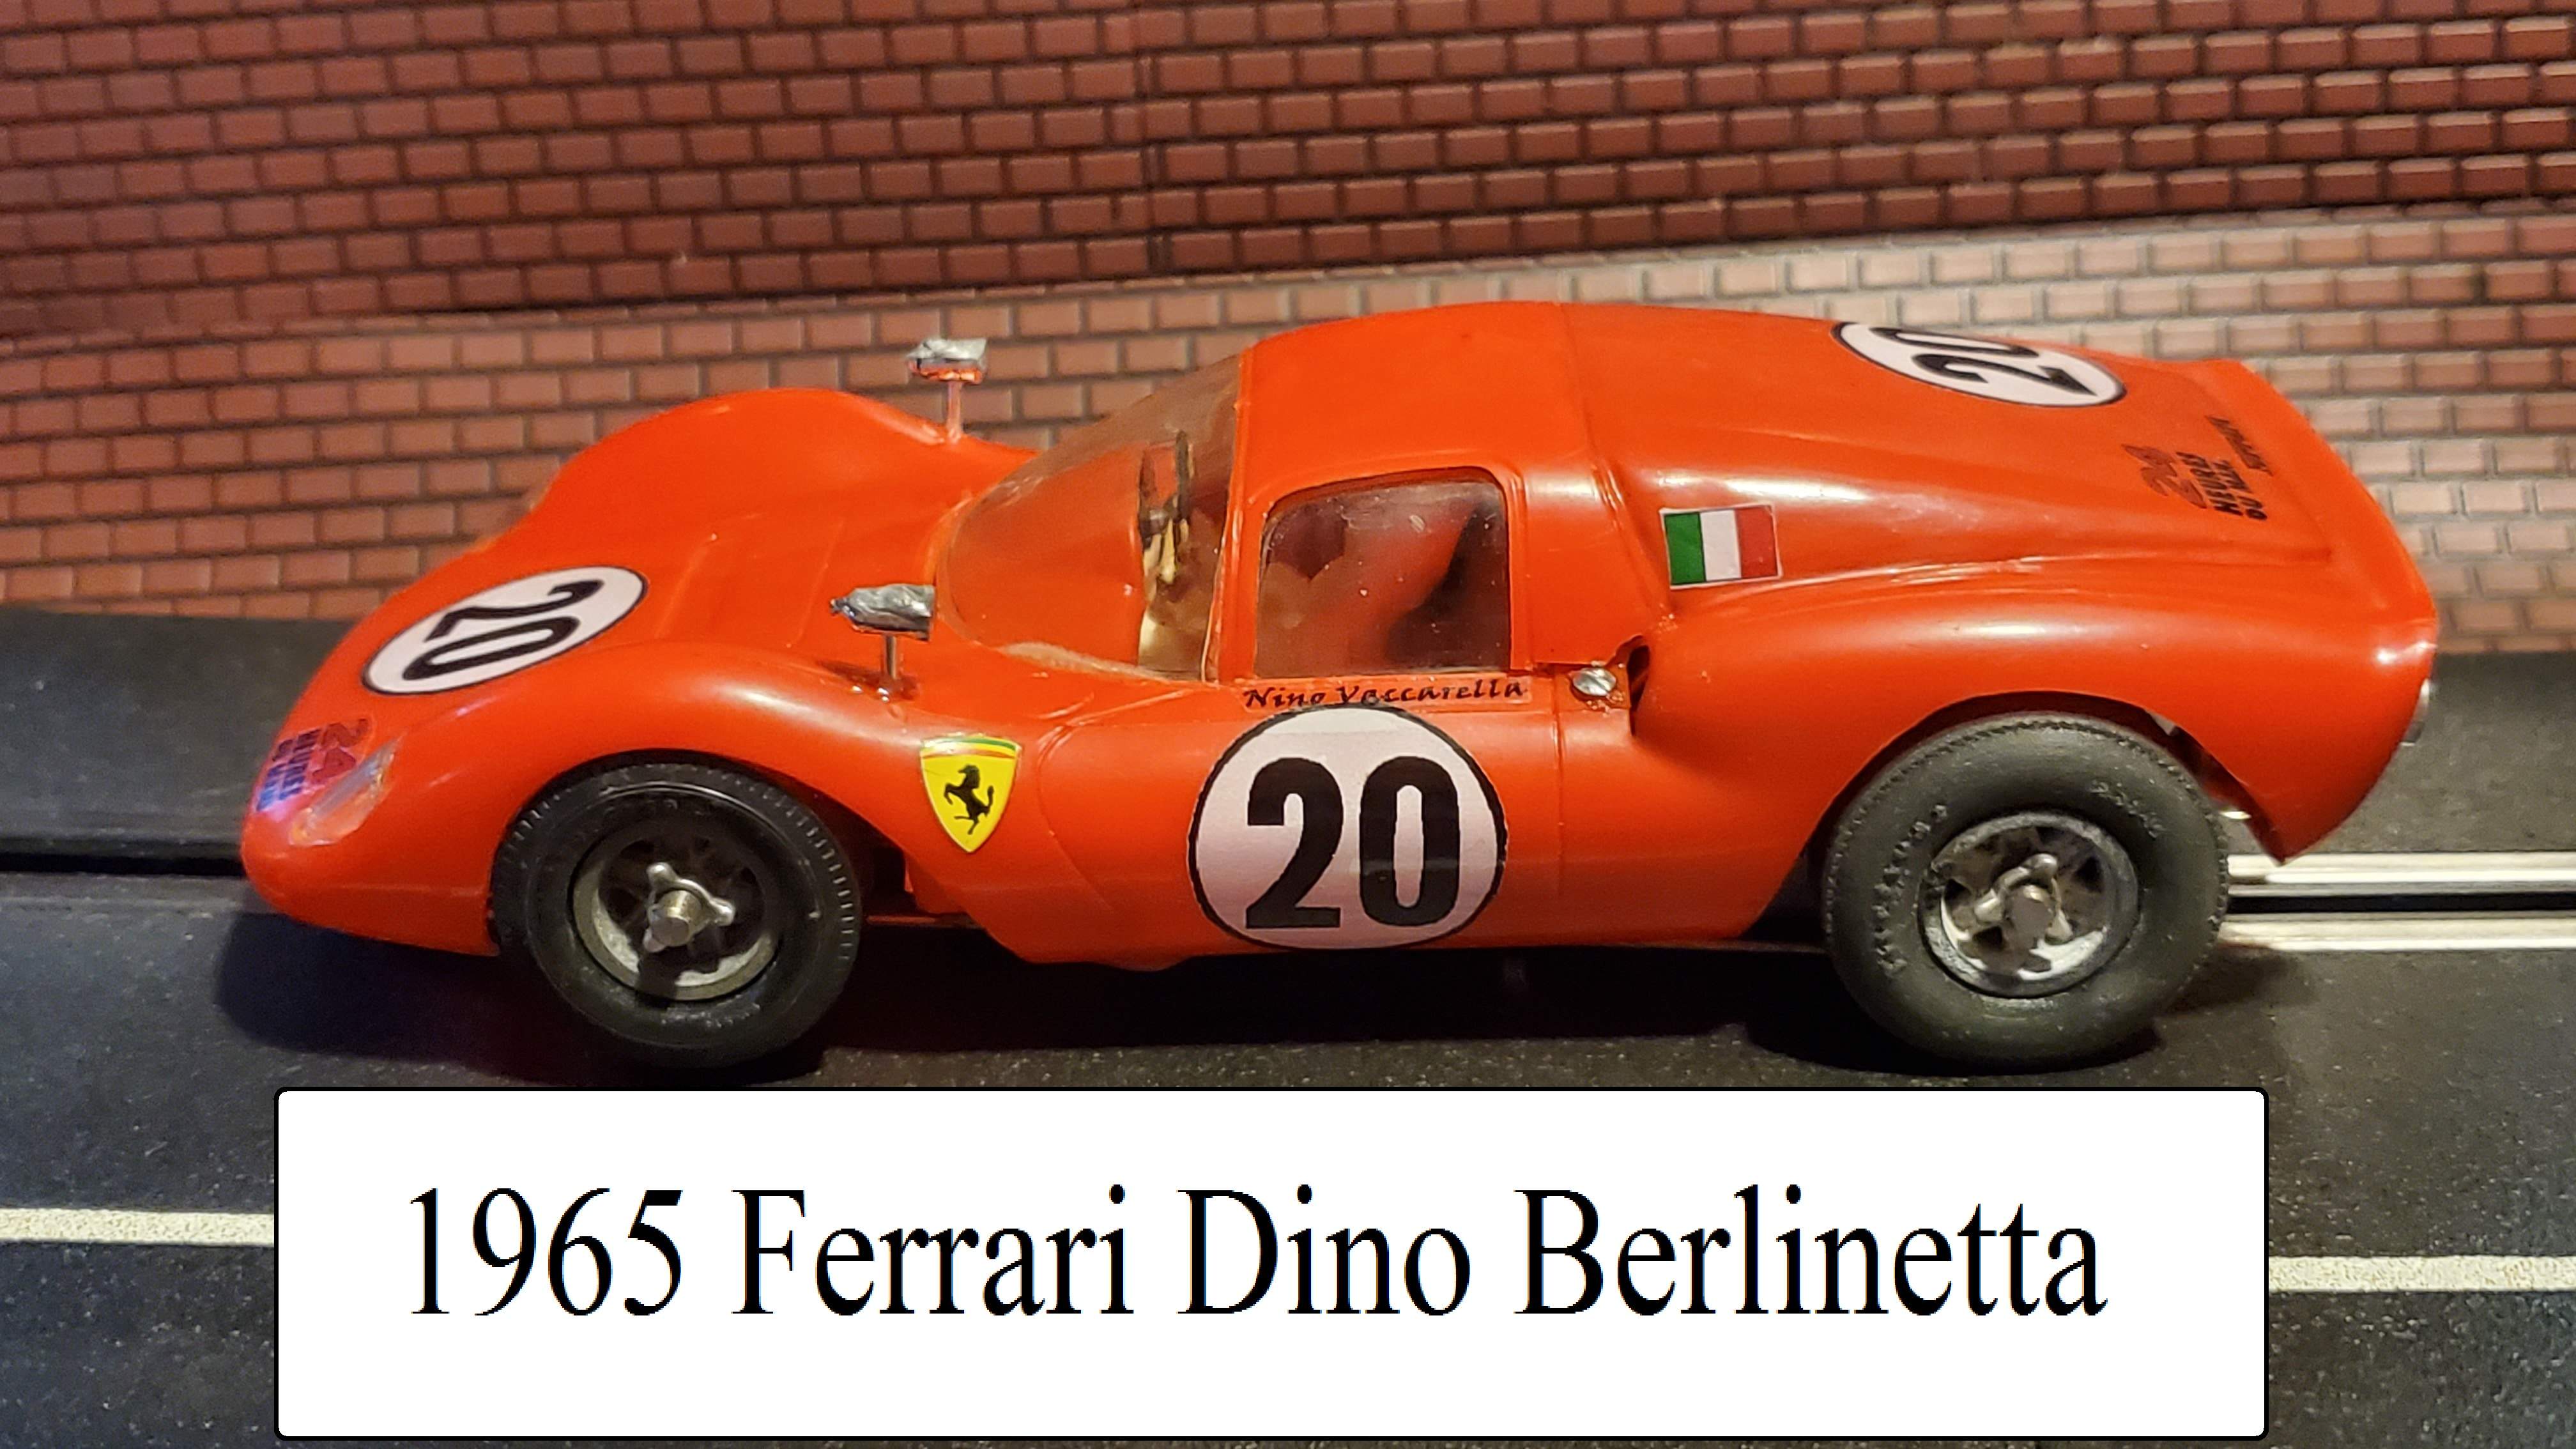 * Black Friday Super Sale, Save $70.00 off our Ebay Price * 1965 COX Ferrari Dino Berlinetta / Ferrari Dine 166 P on COX Competition Chassis 1/24 Scale Slot Car